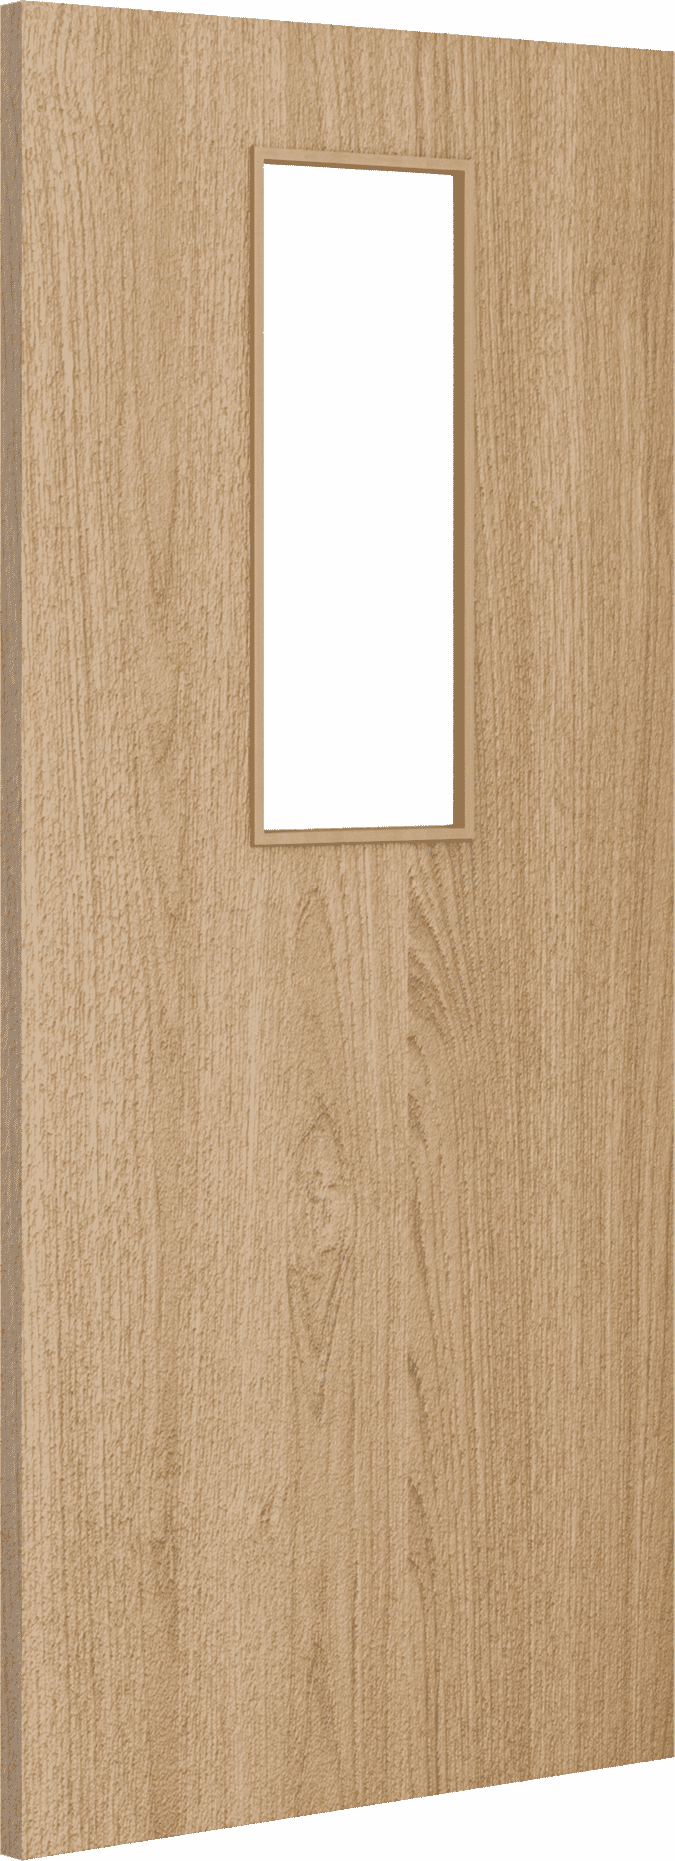 2040mm x 826mm x 44mm Architectural Oak 14 Clear Glazed - Prefinished FD30 Fire Door Blank